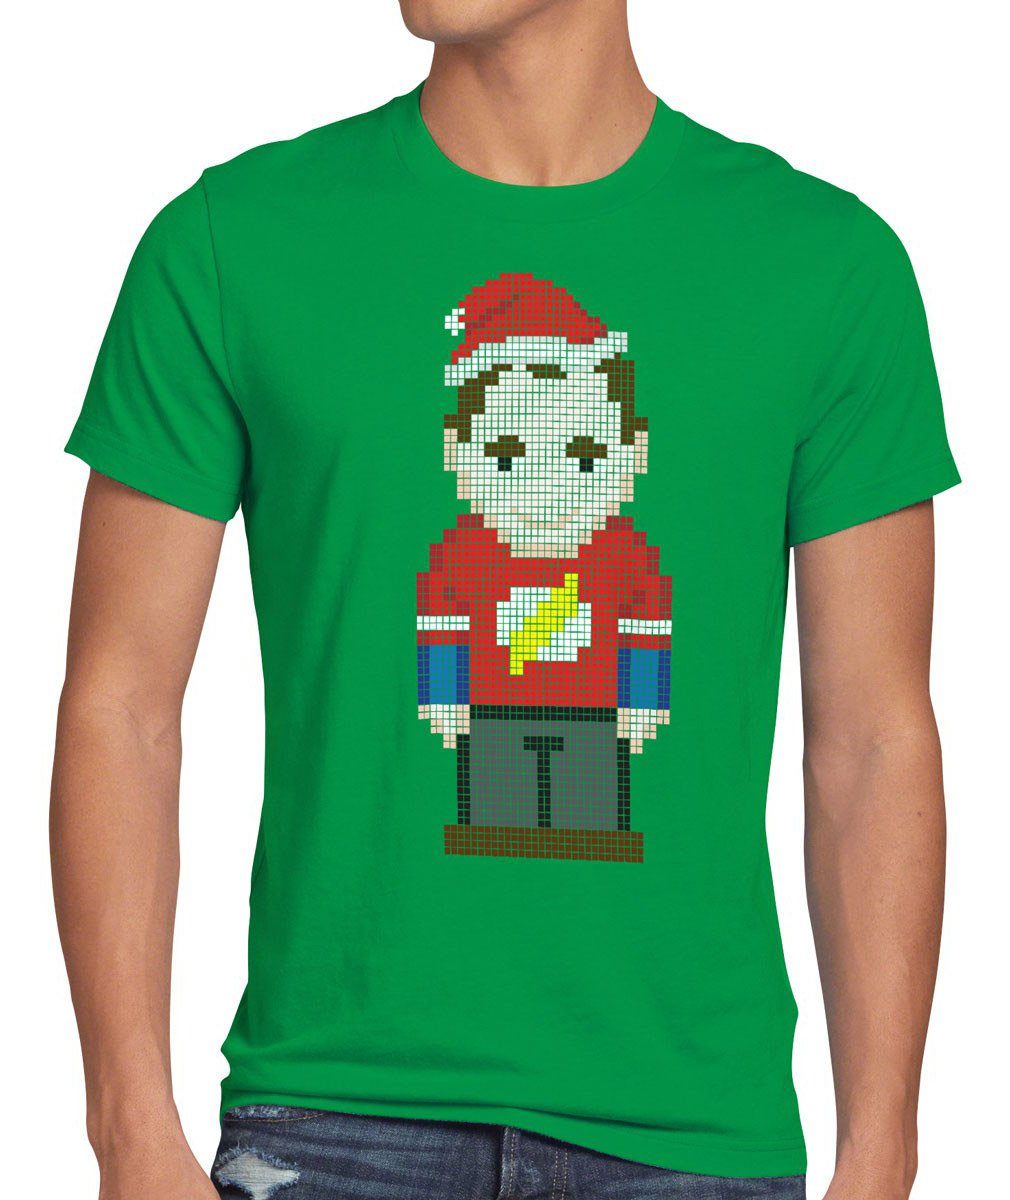 T-Shirt Weihnachten Print-Shirt style3 pixel bang Herren big Sheldon cooper grün nikolaus theory winter